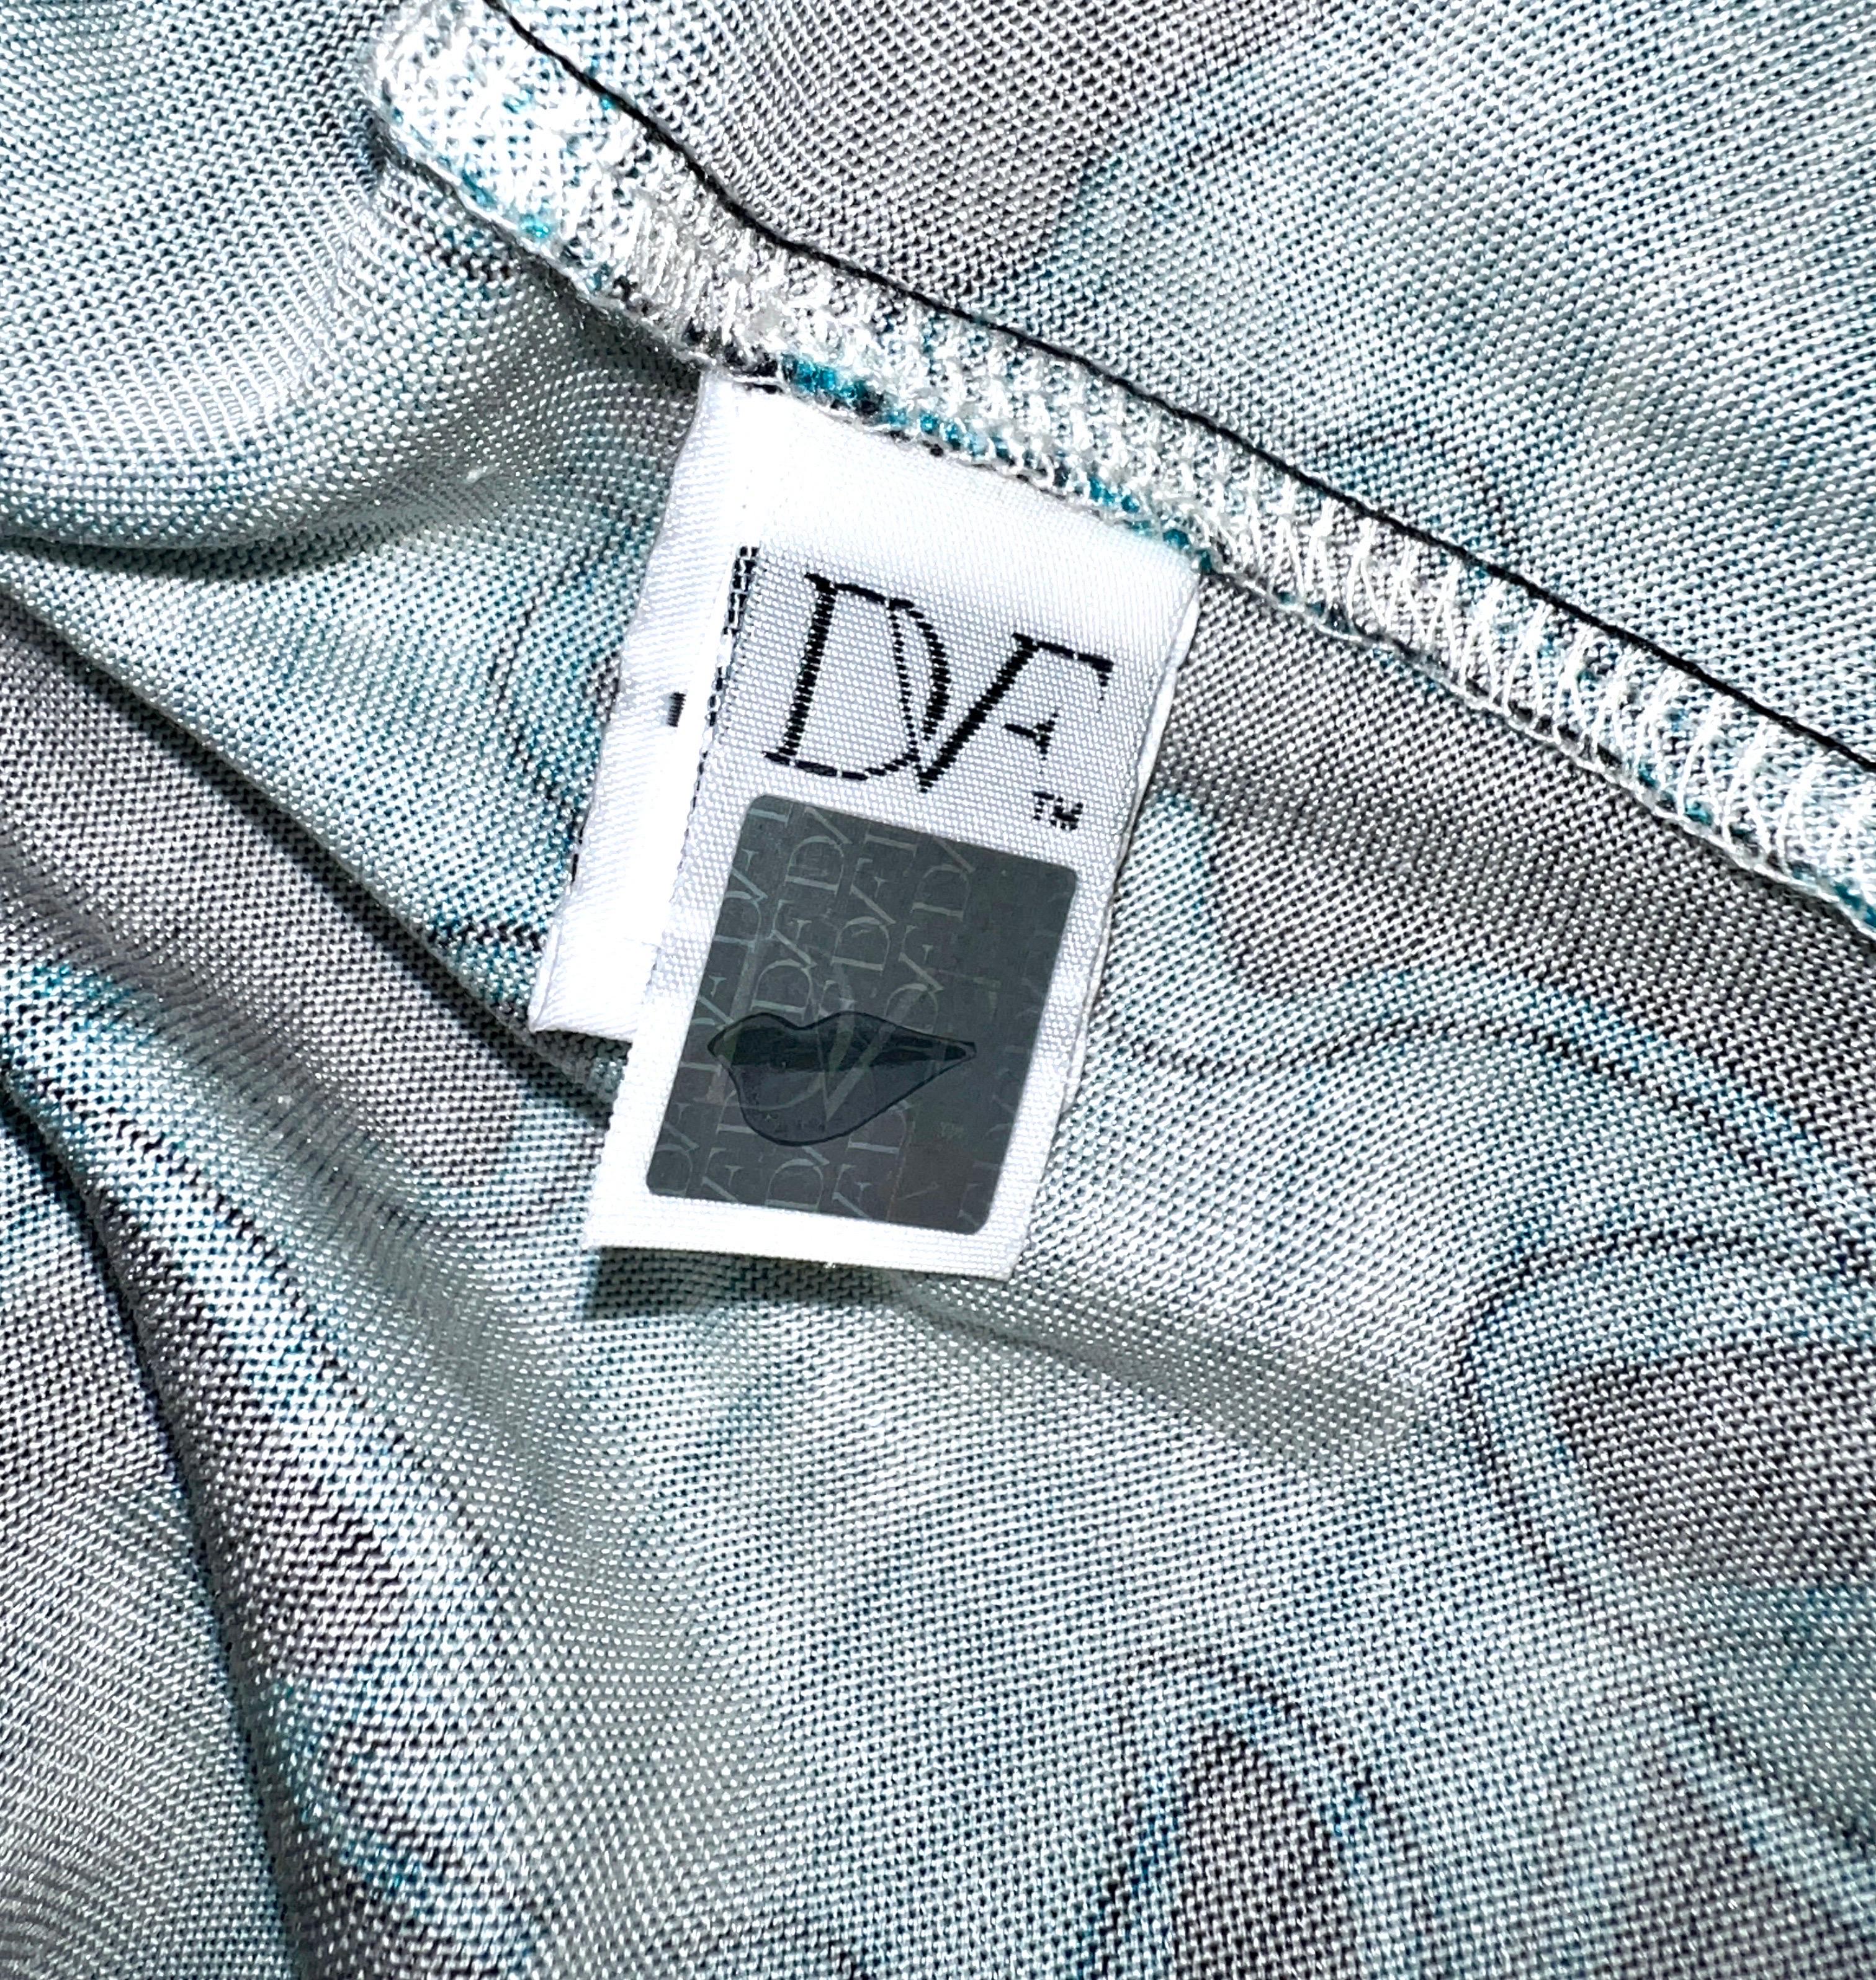 NEW DVF Diane von Furstenberg Wrap Dress Vintage Print Reissue 8 2